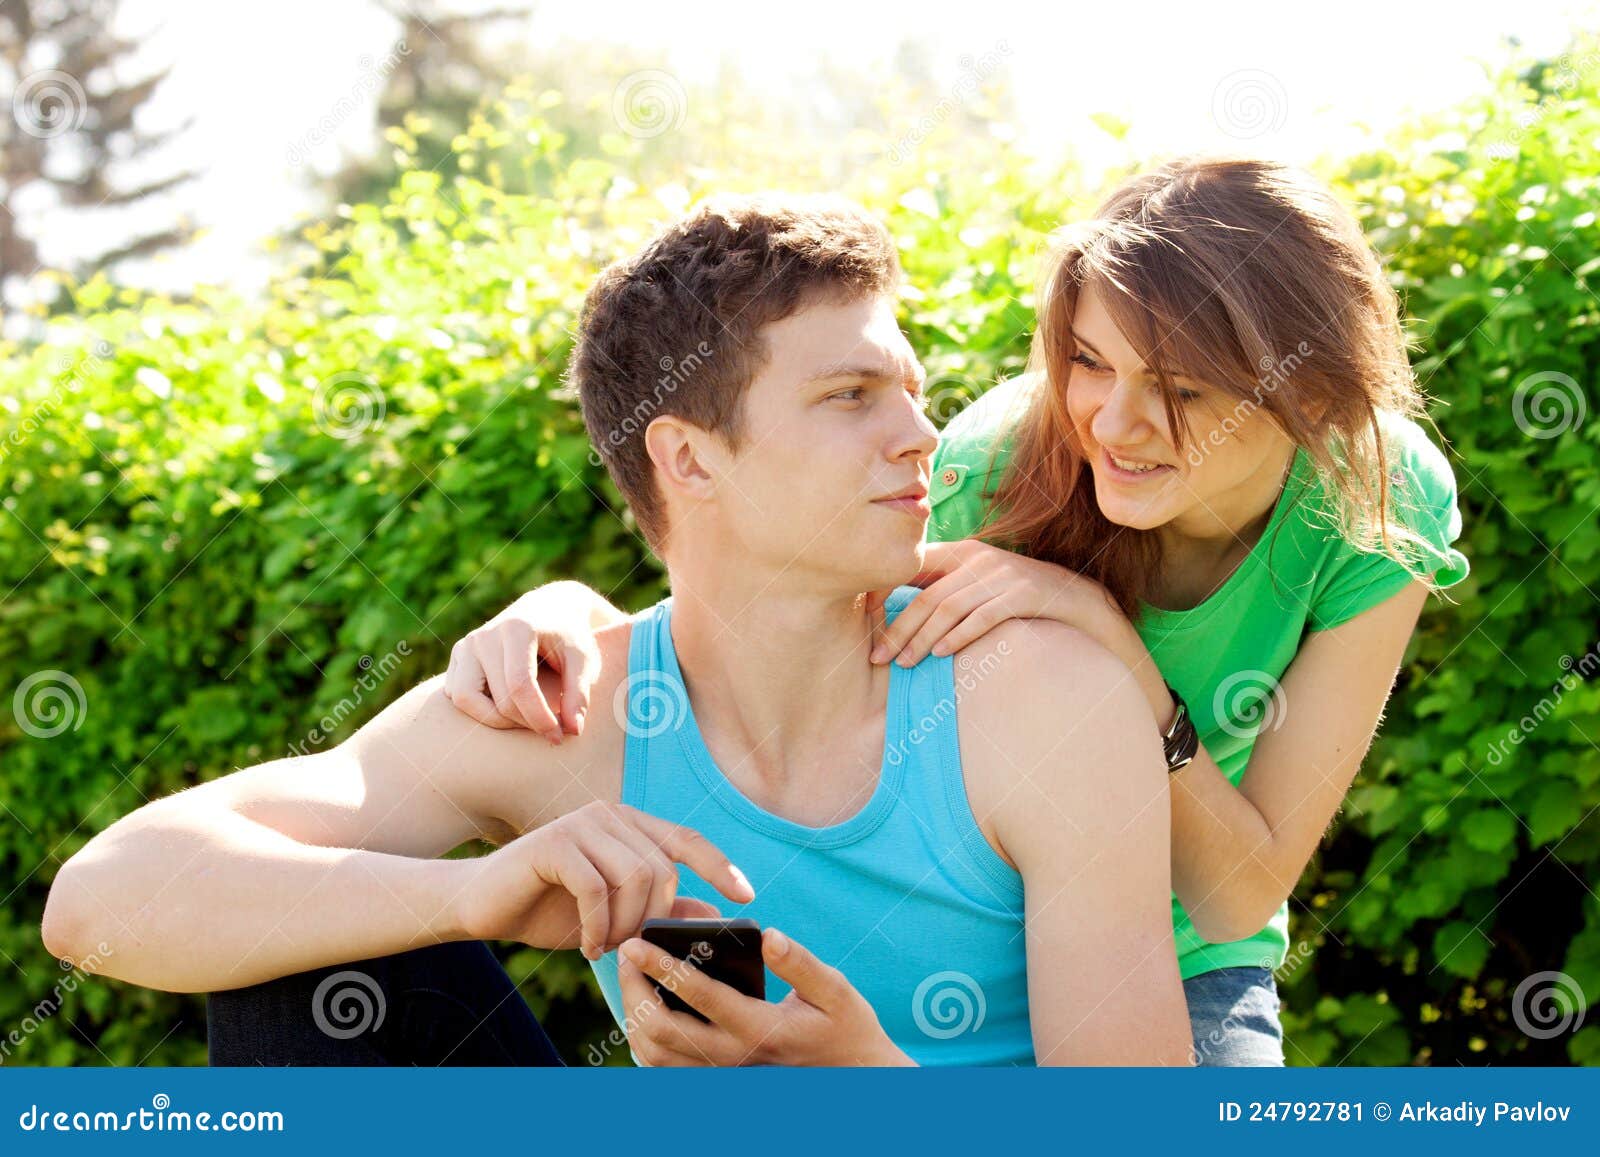 Парень и девушка начали встречаться. Игры на природе между мужчиной и женщиной. Отношения между парнем и девушкой в подростковом возрасте. Работа над отношениями картинка. Влюбленные молодежь jpg.